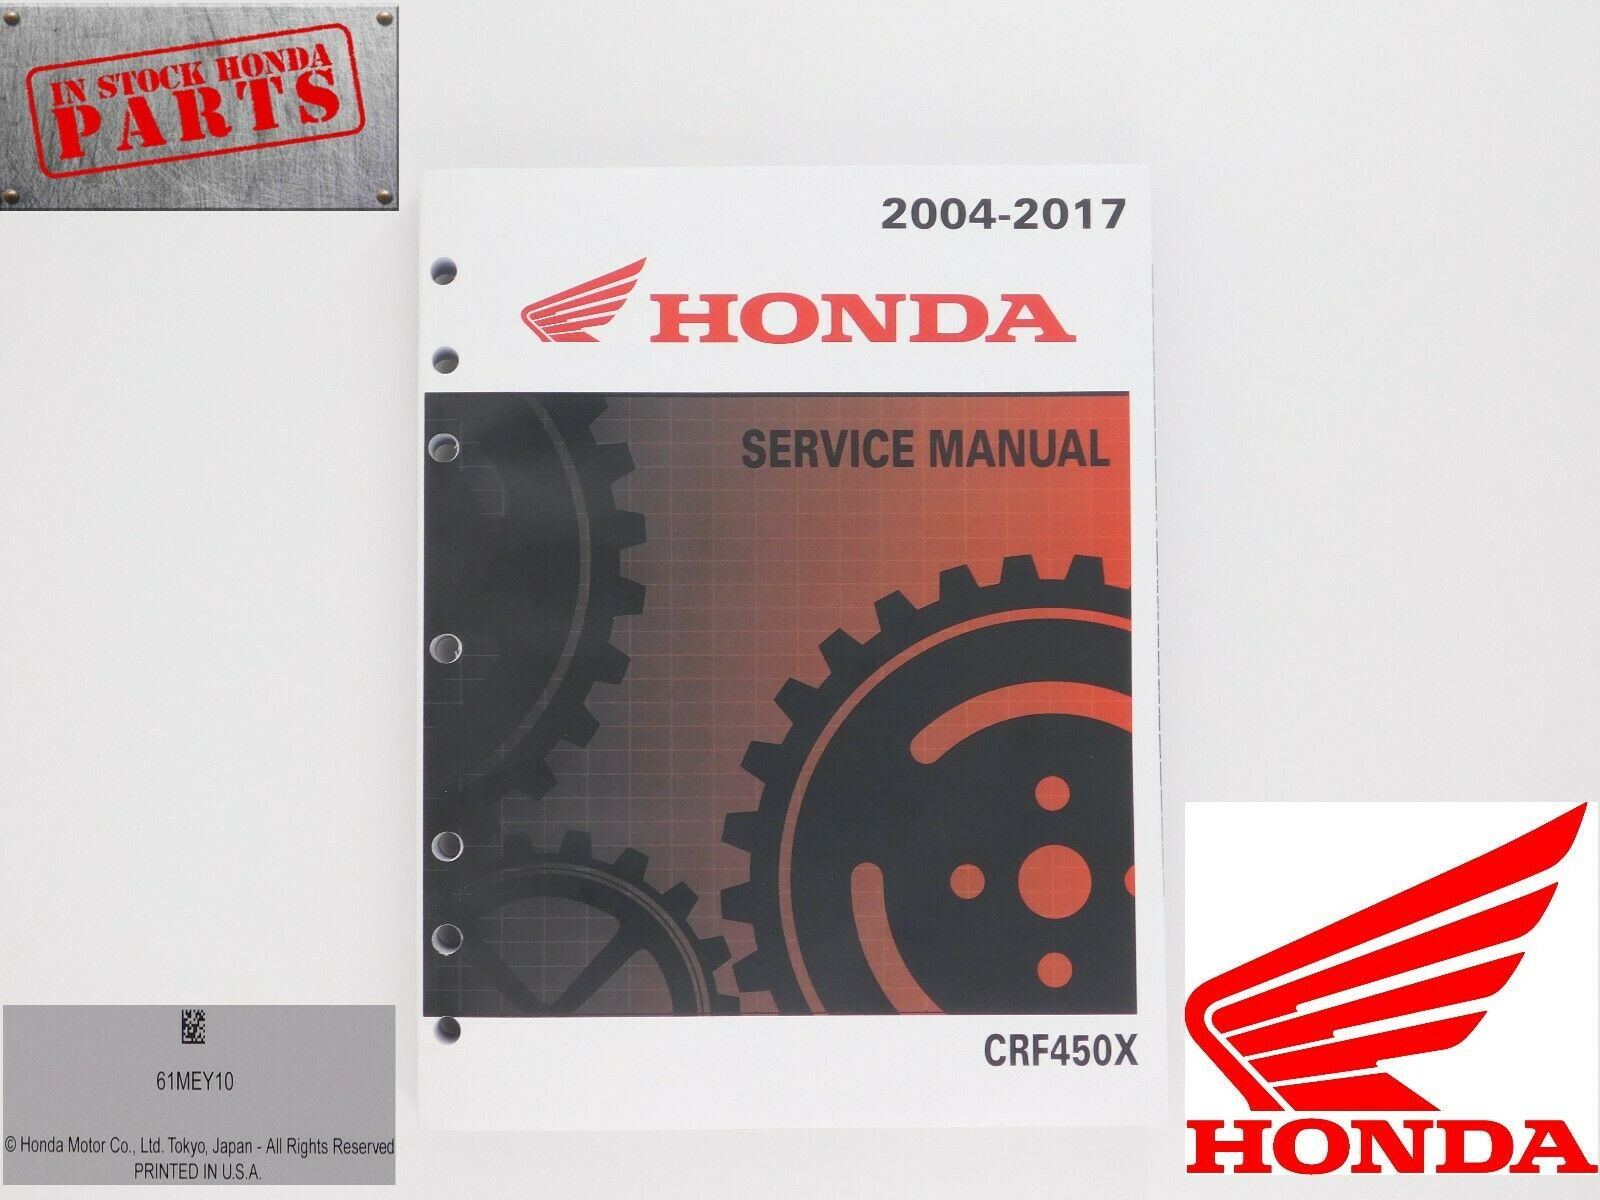 New Genuine Honda Service Manual 2005-2017 CRF450 X OEM Shop Repair Book 61MEY10